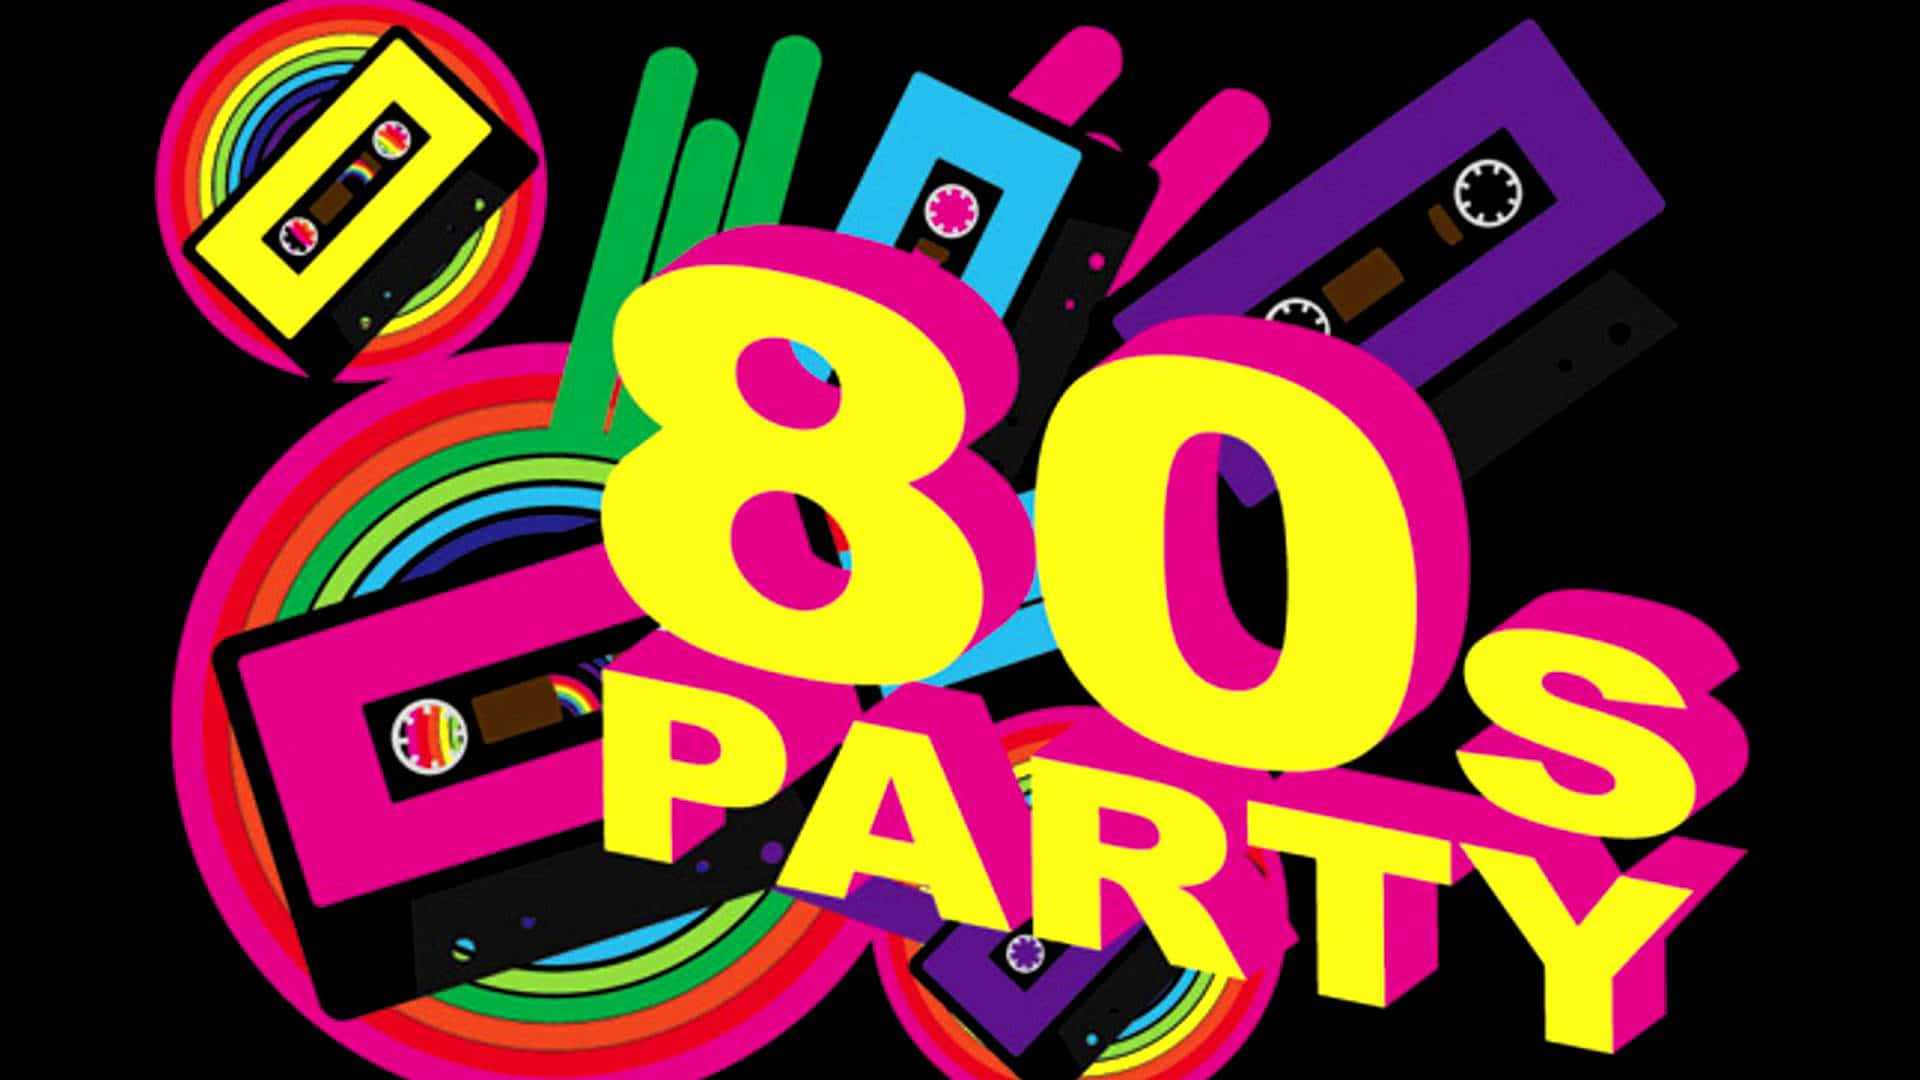 Обои 90 х. Стиль 80х. Приглашение на вечеринку в стиле 80-х. Пригласительные на вечеринку 80-х. Вечеринка в стиле 80-х.